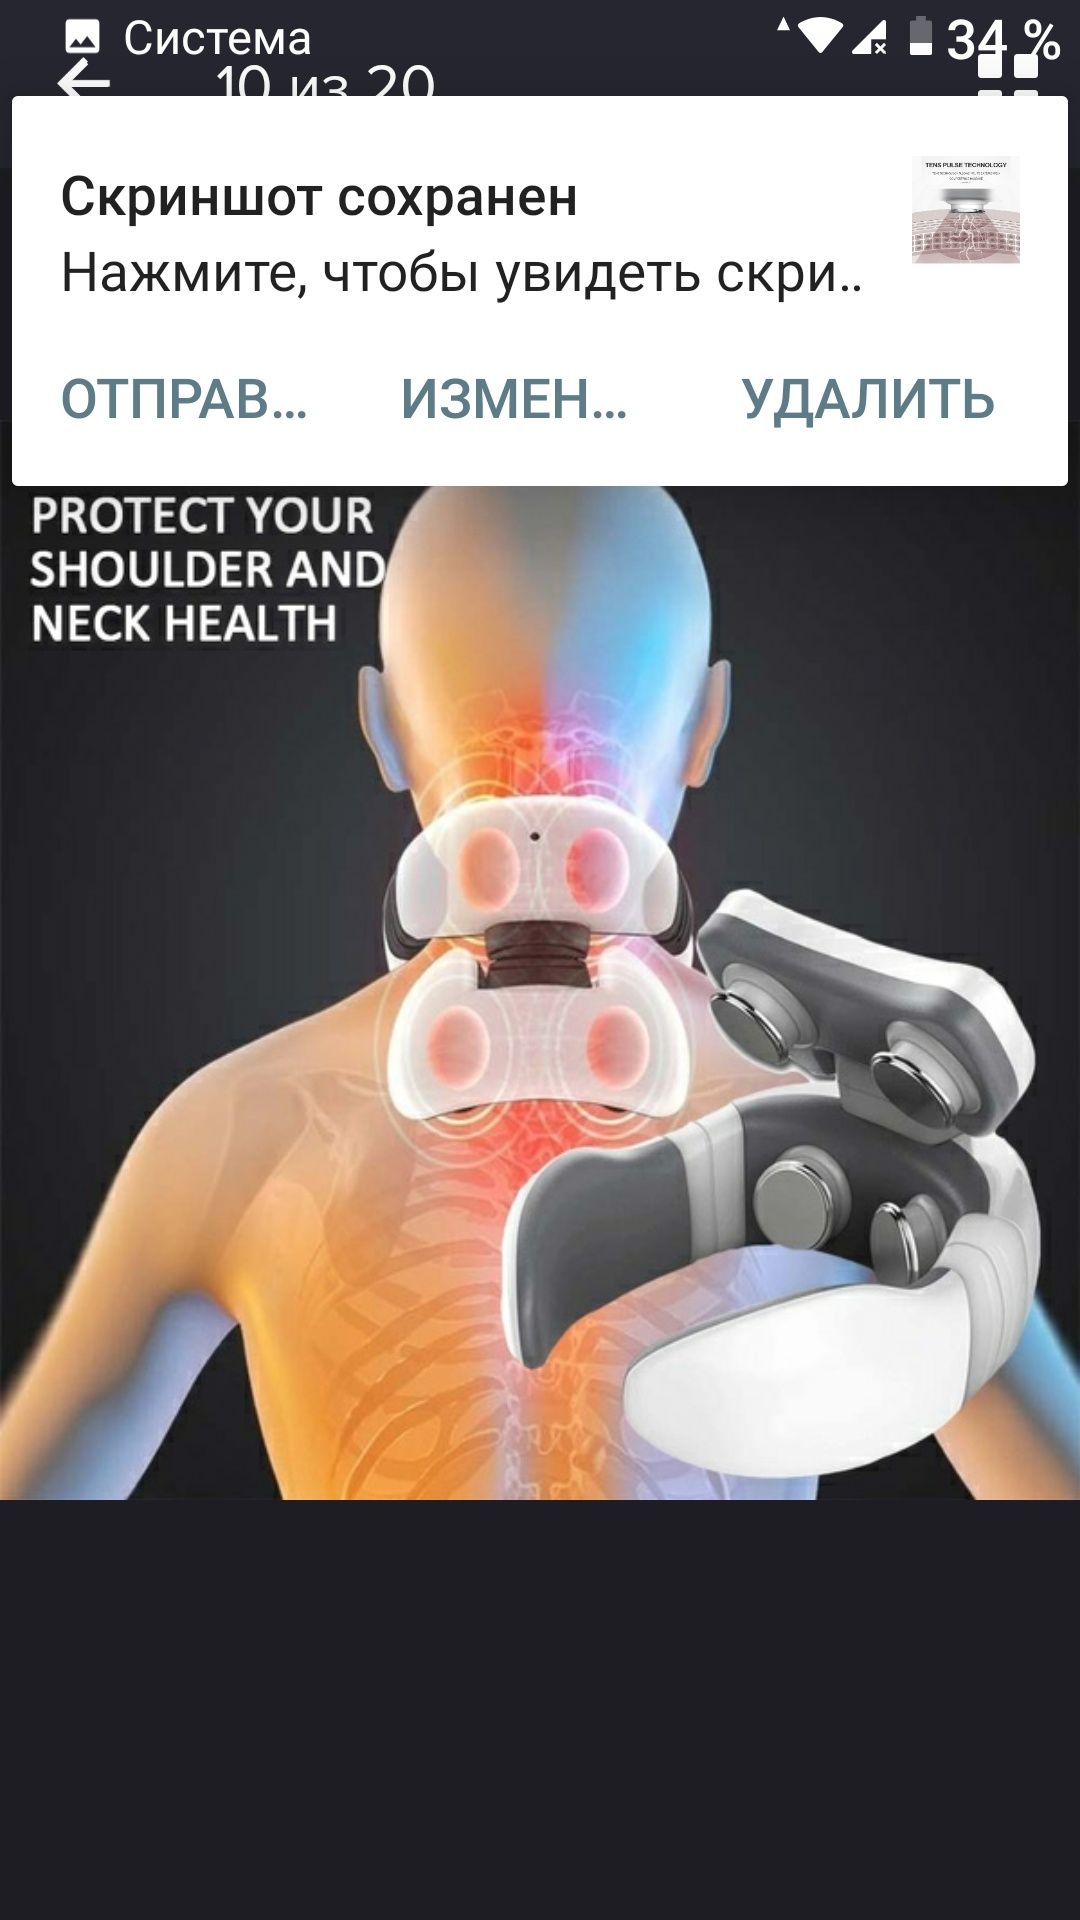 Новый модернизированный горячий 4D умный массажёр для шеи и плеч